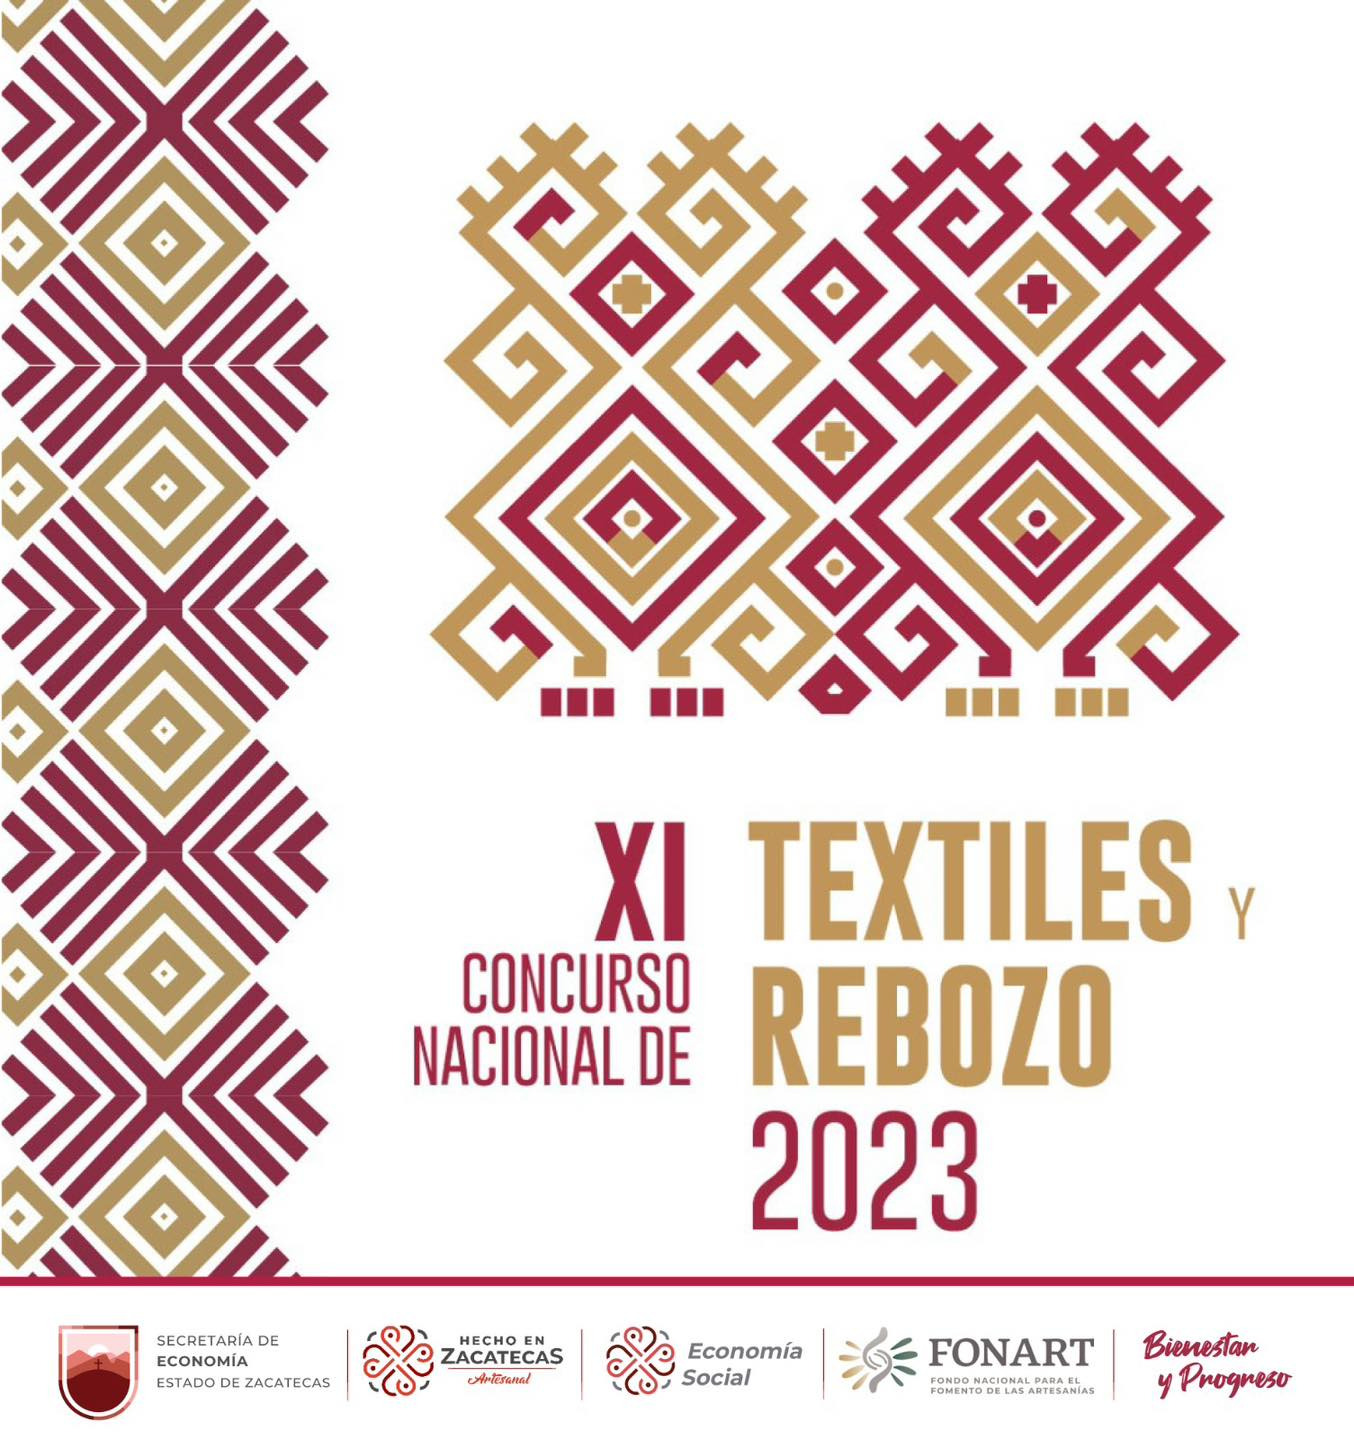 Invita Gobierno de Zacatecas a participar en el XI Concurso Nacional de Textiles y Rebozo 2023